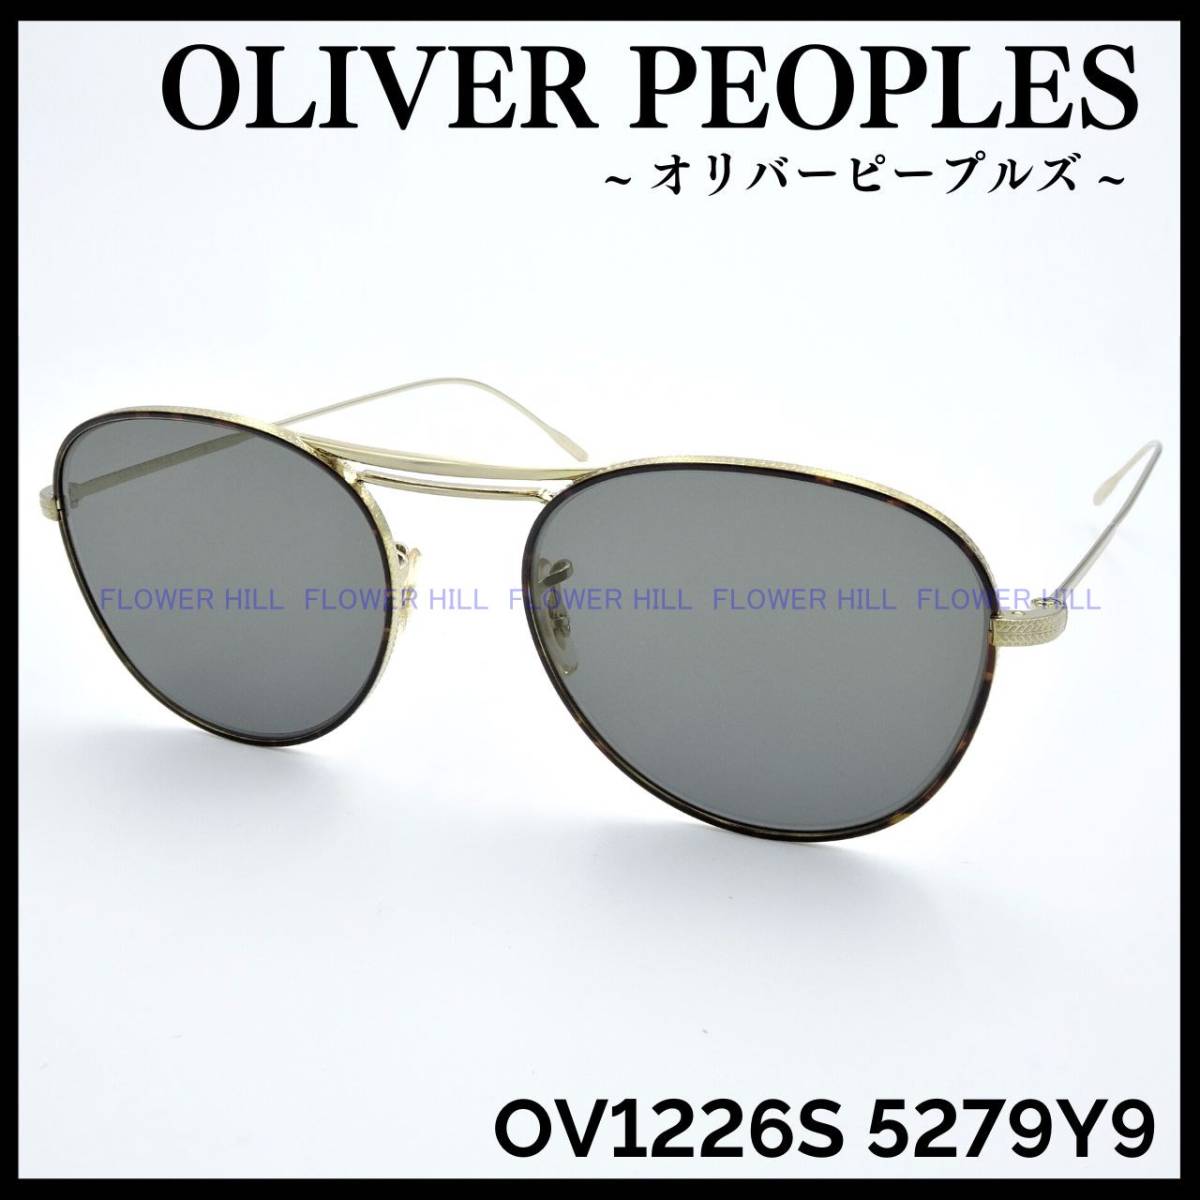 【新品・送料無料】オリバーピープルズ OLIVER PEOPLES OV1226S 5279Y9 Cade サングラス ゴールド ダブルブリッジ 高級 メンズ レディース